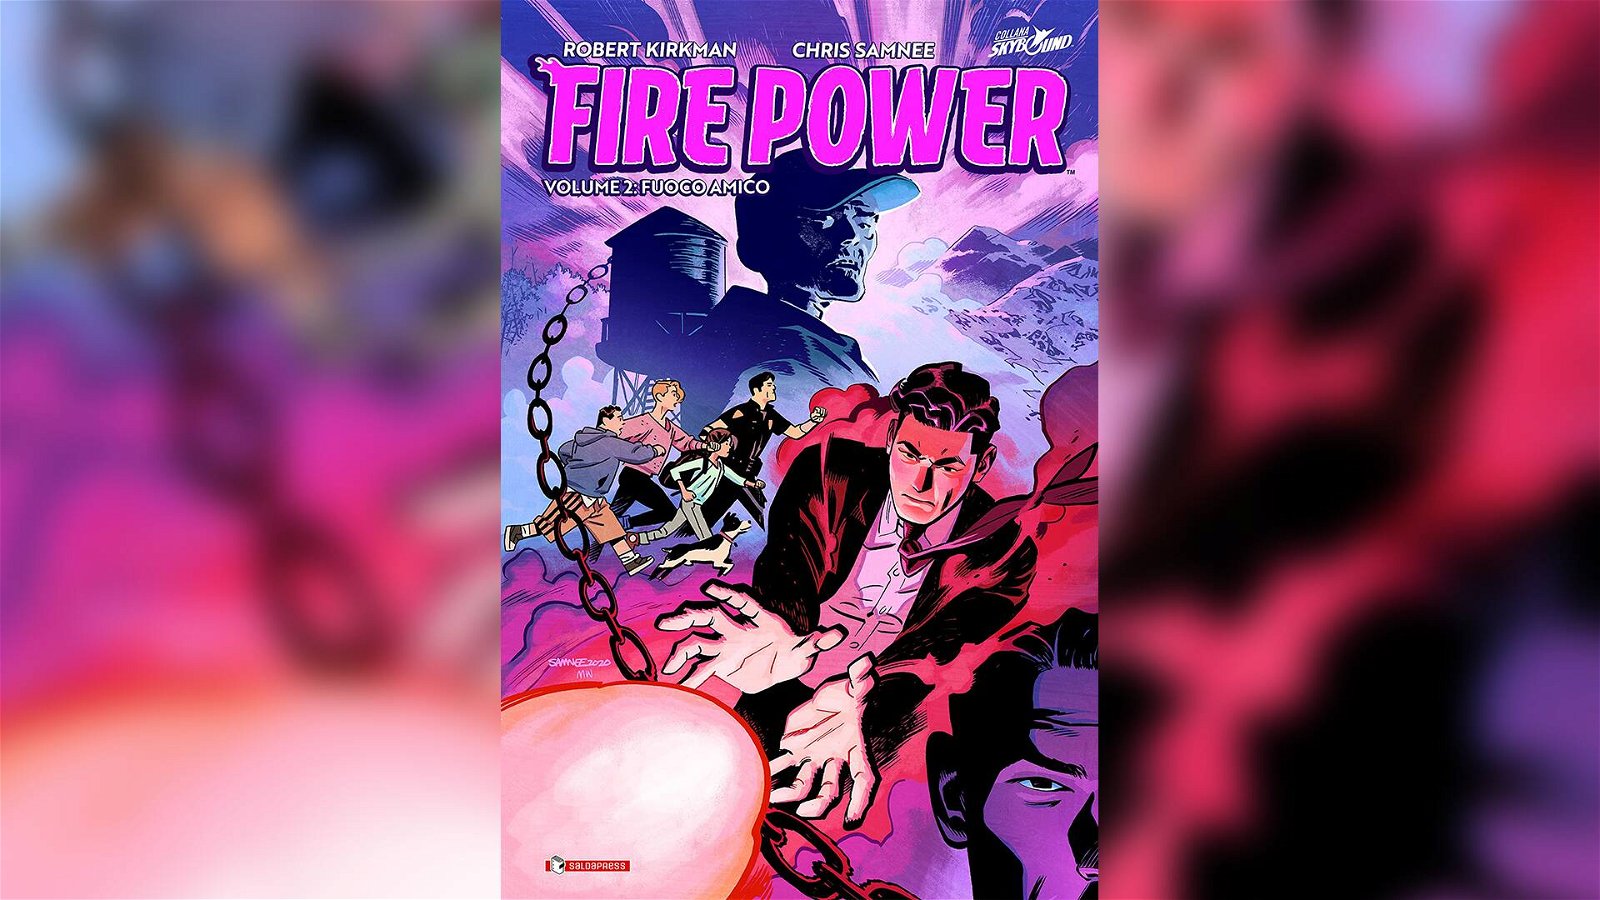 Immagine di Fire Power Vol. 2 – Fuoco Amico: la recensione